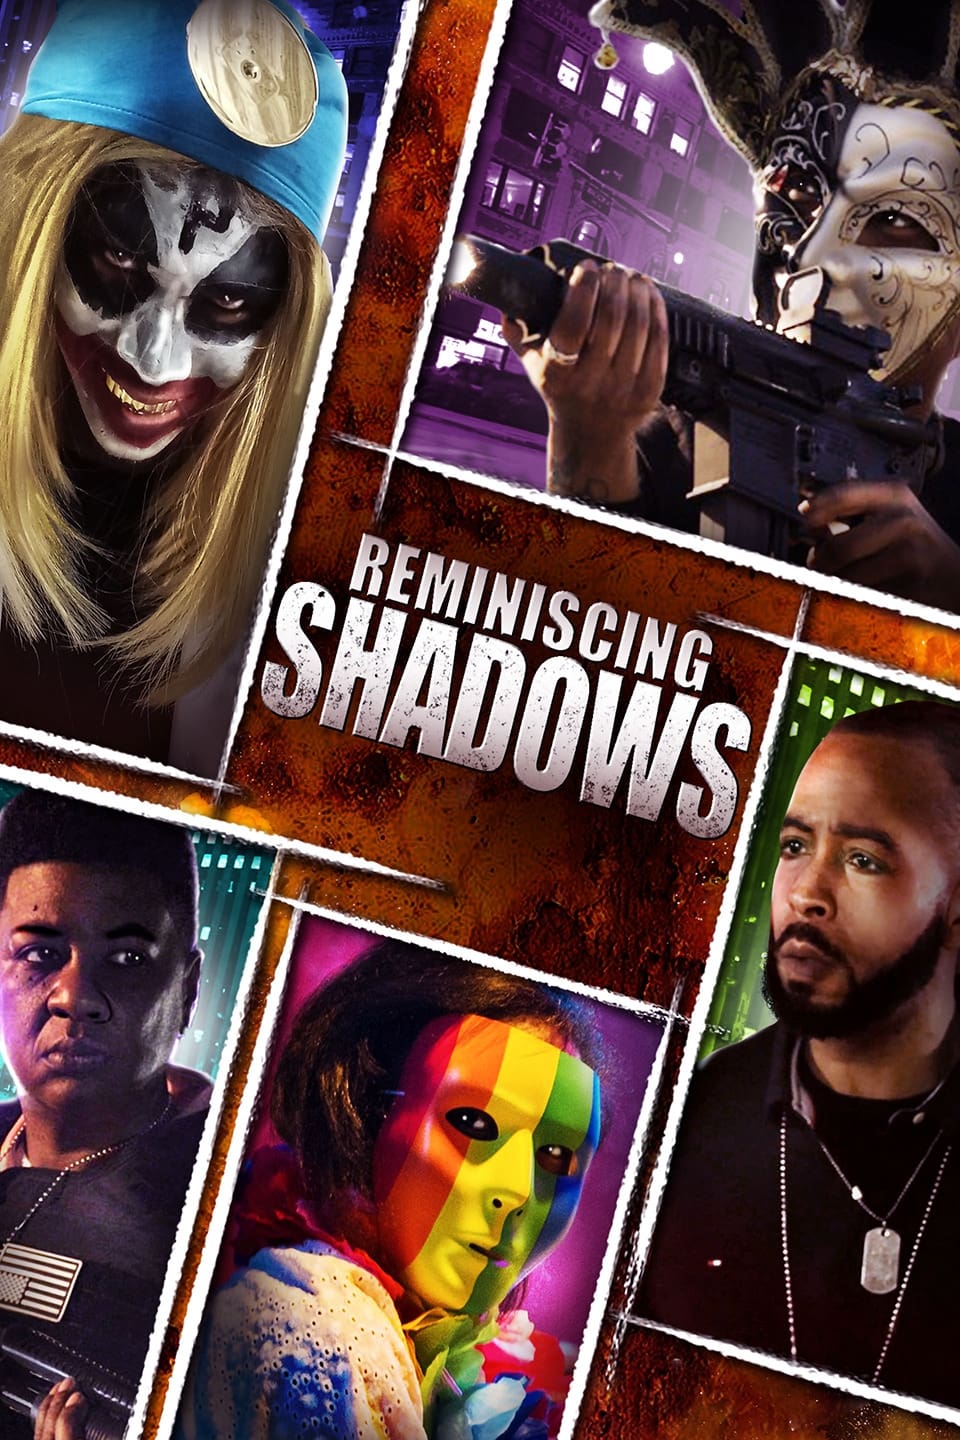 Reminiscing Shadows (2022) poster - Allmovieland.com